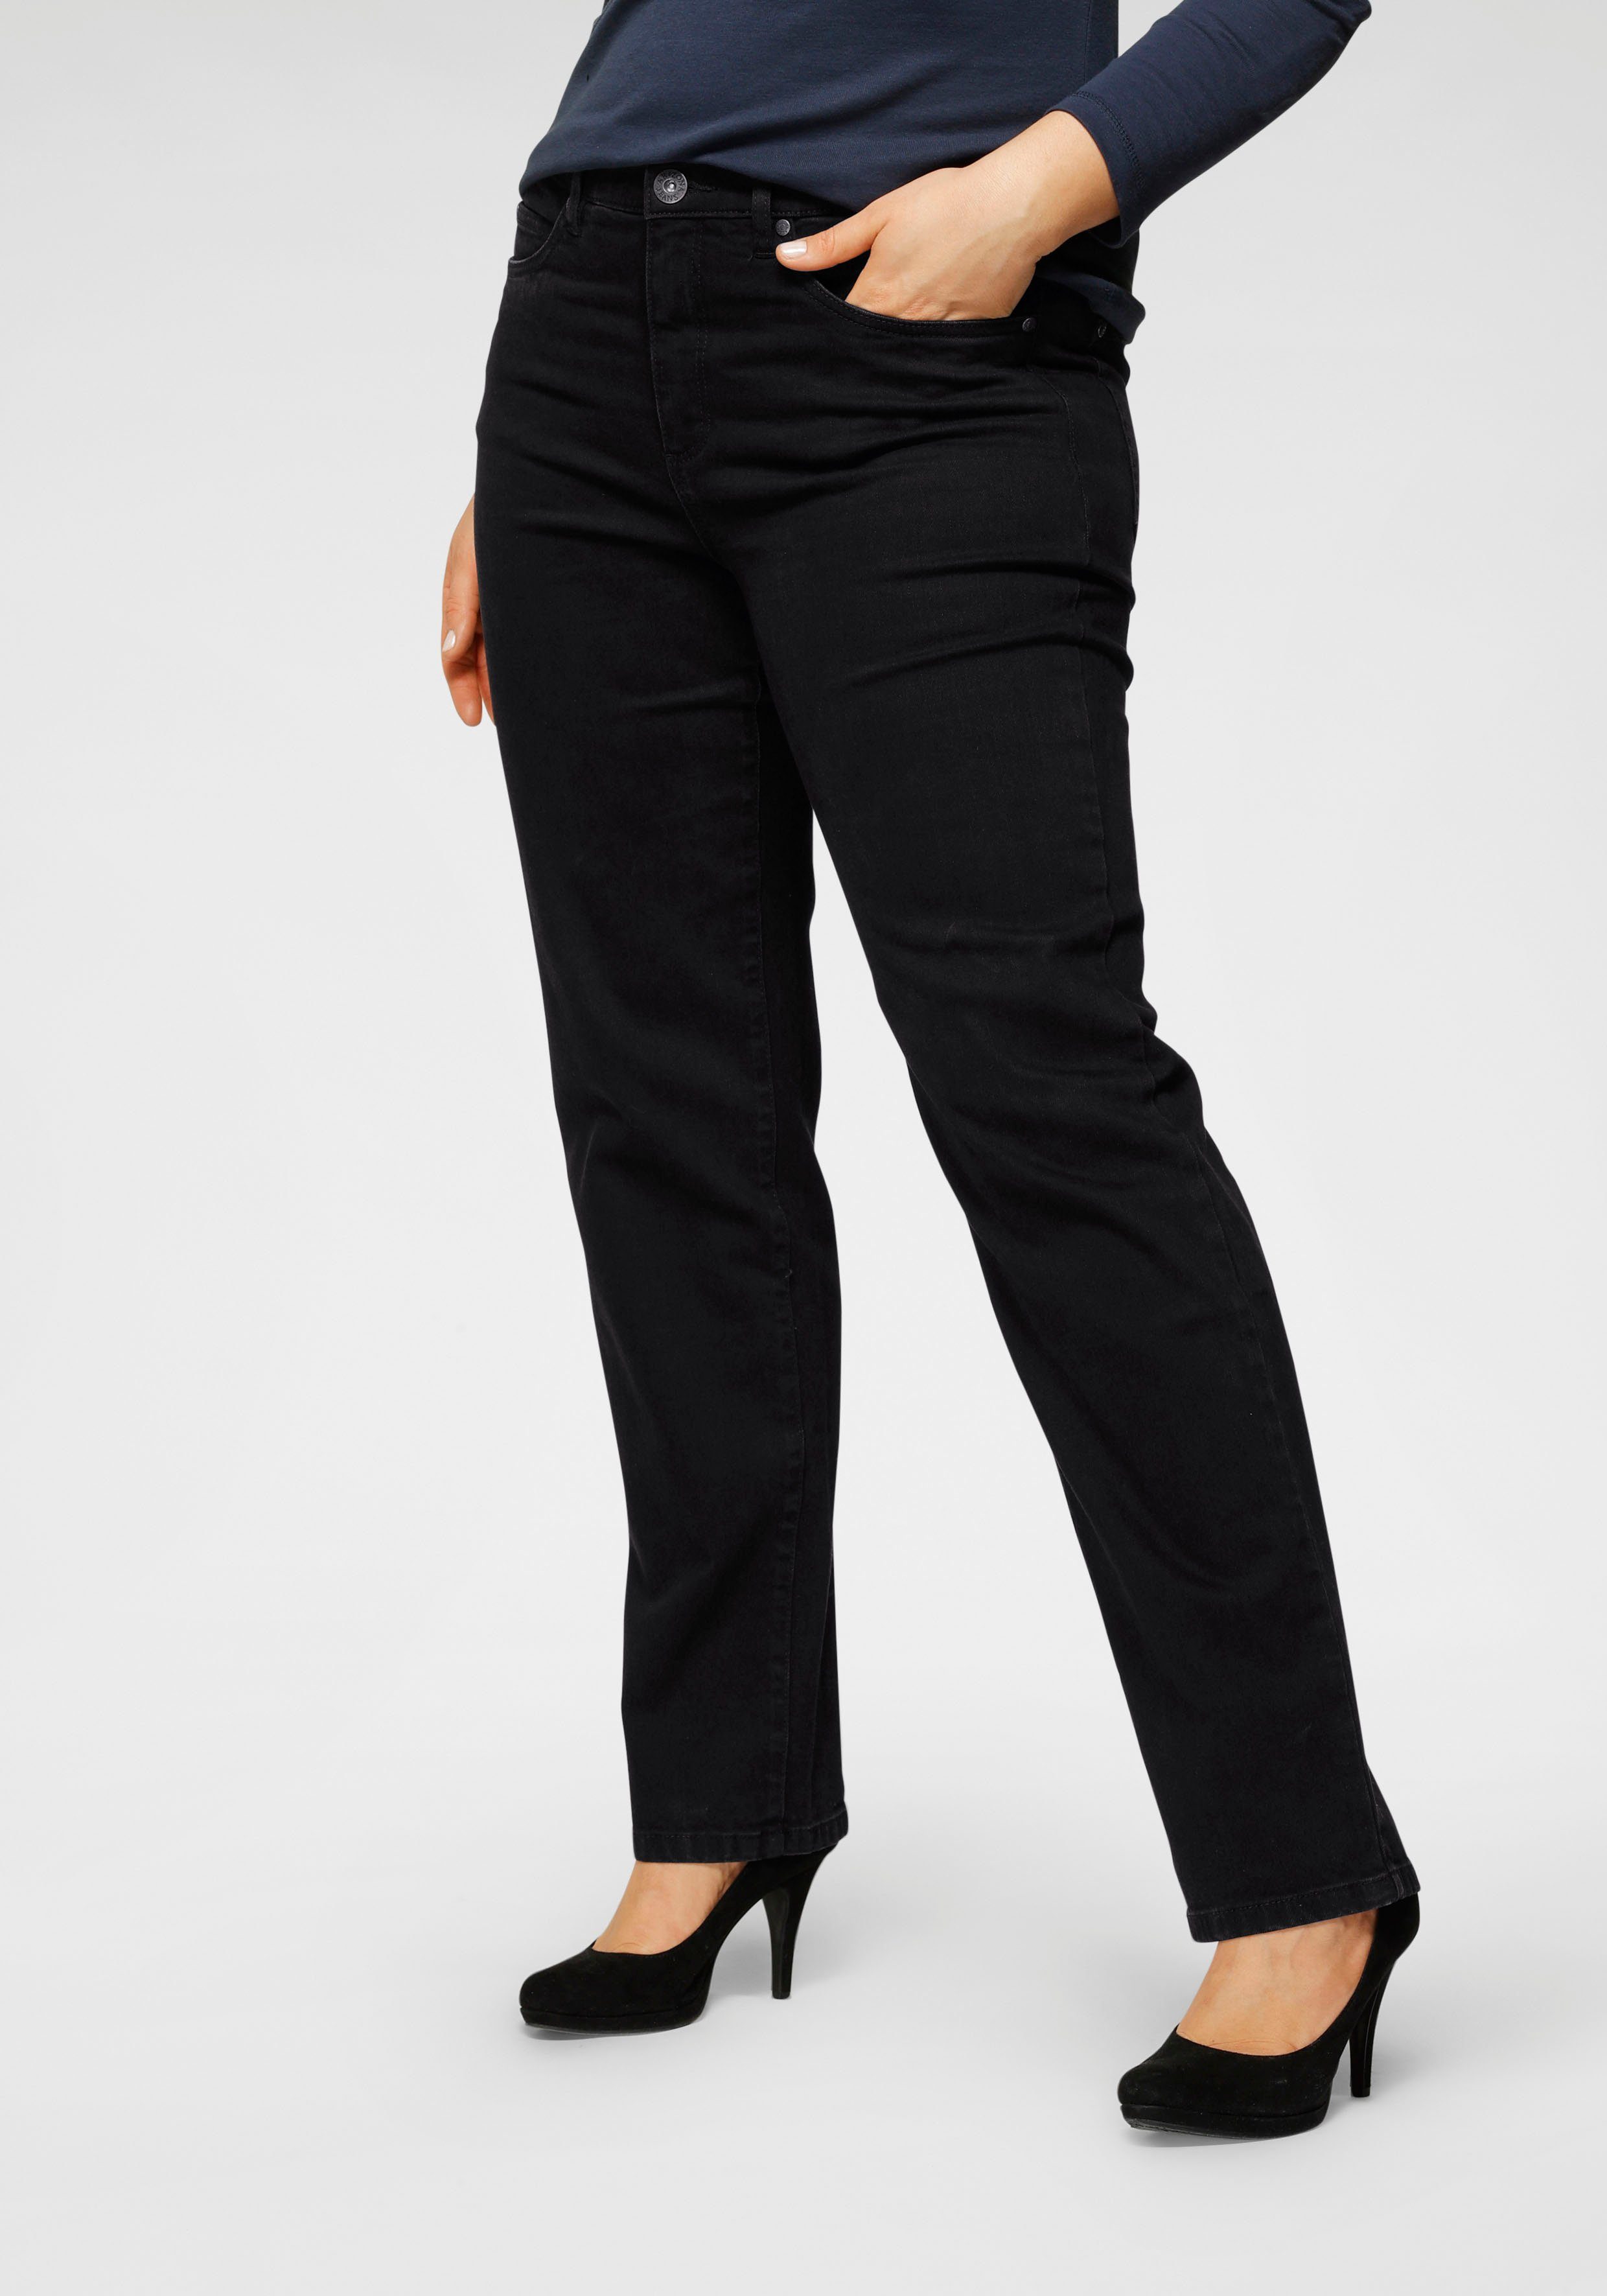 Arizona Straight-Jeans Curve-Collection mit bequemen Dehnbund black